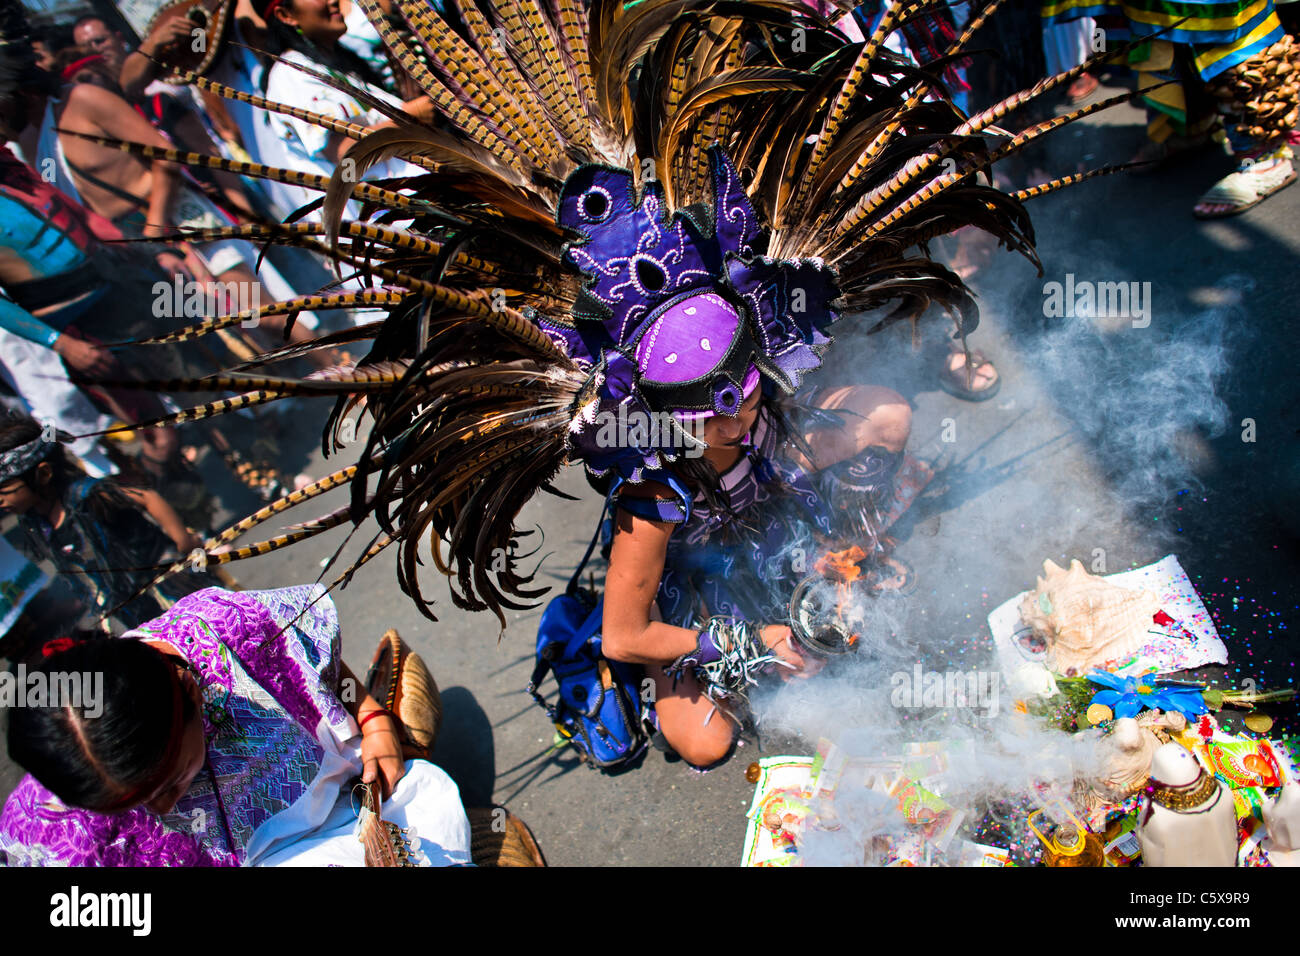 Un danseur effectue une danse culte mort aztèque au cours d'une cérémonie à santa muerte (sainte mort) dans la ville de Mexico. Banque D'Images